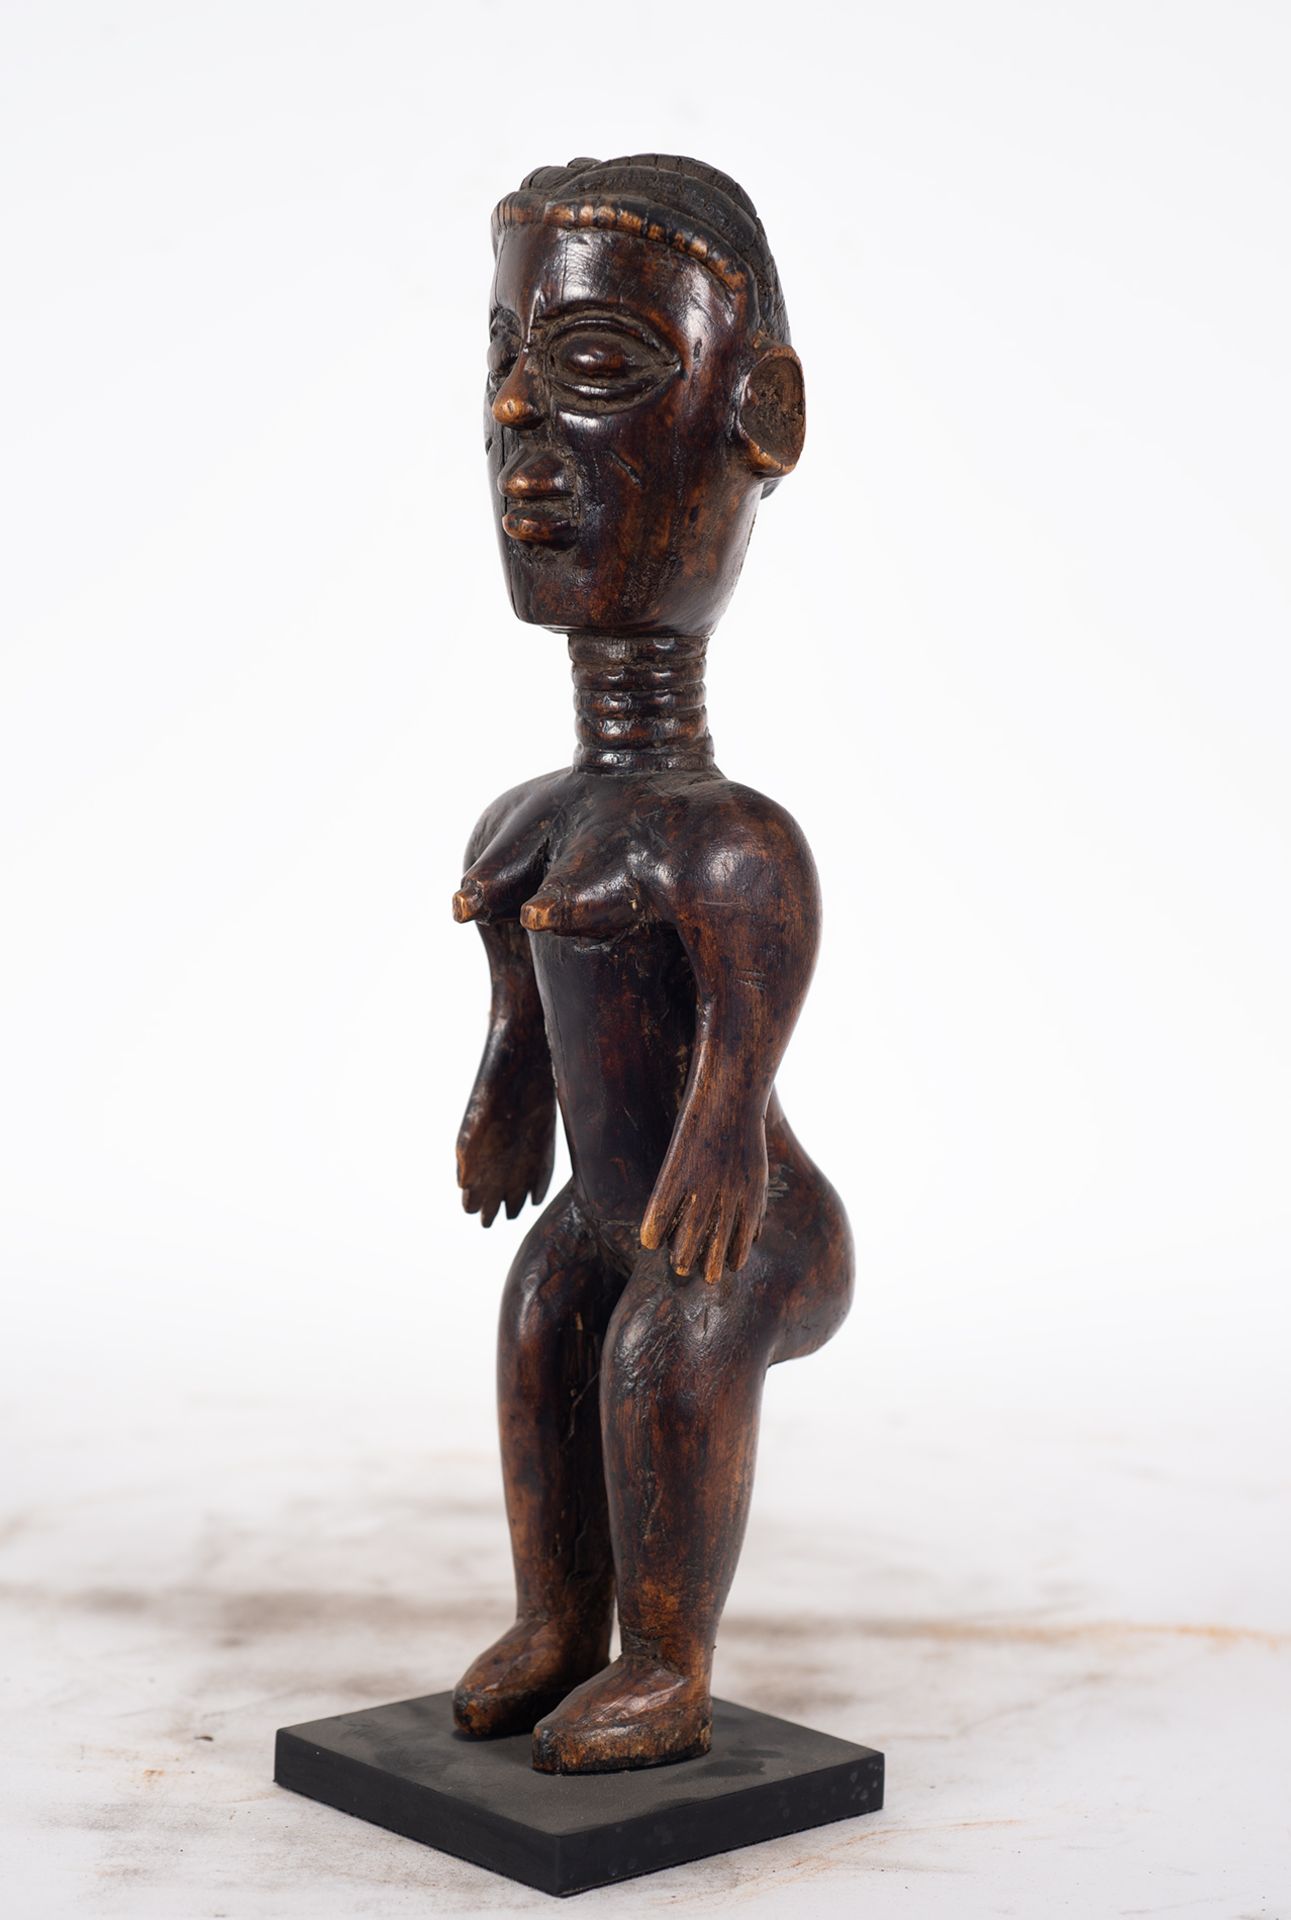 Guro Sculpture, Ivory Coast - Bild 2 aus 7